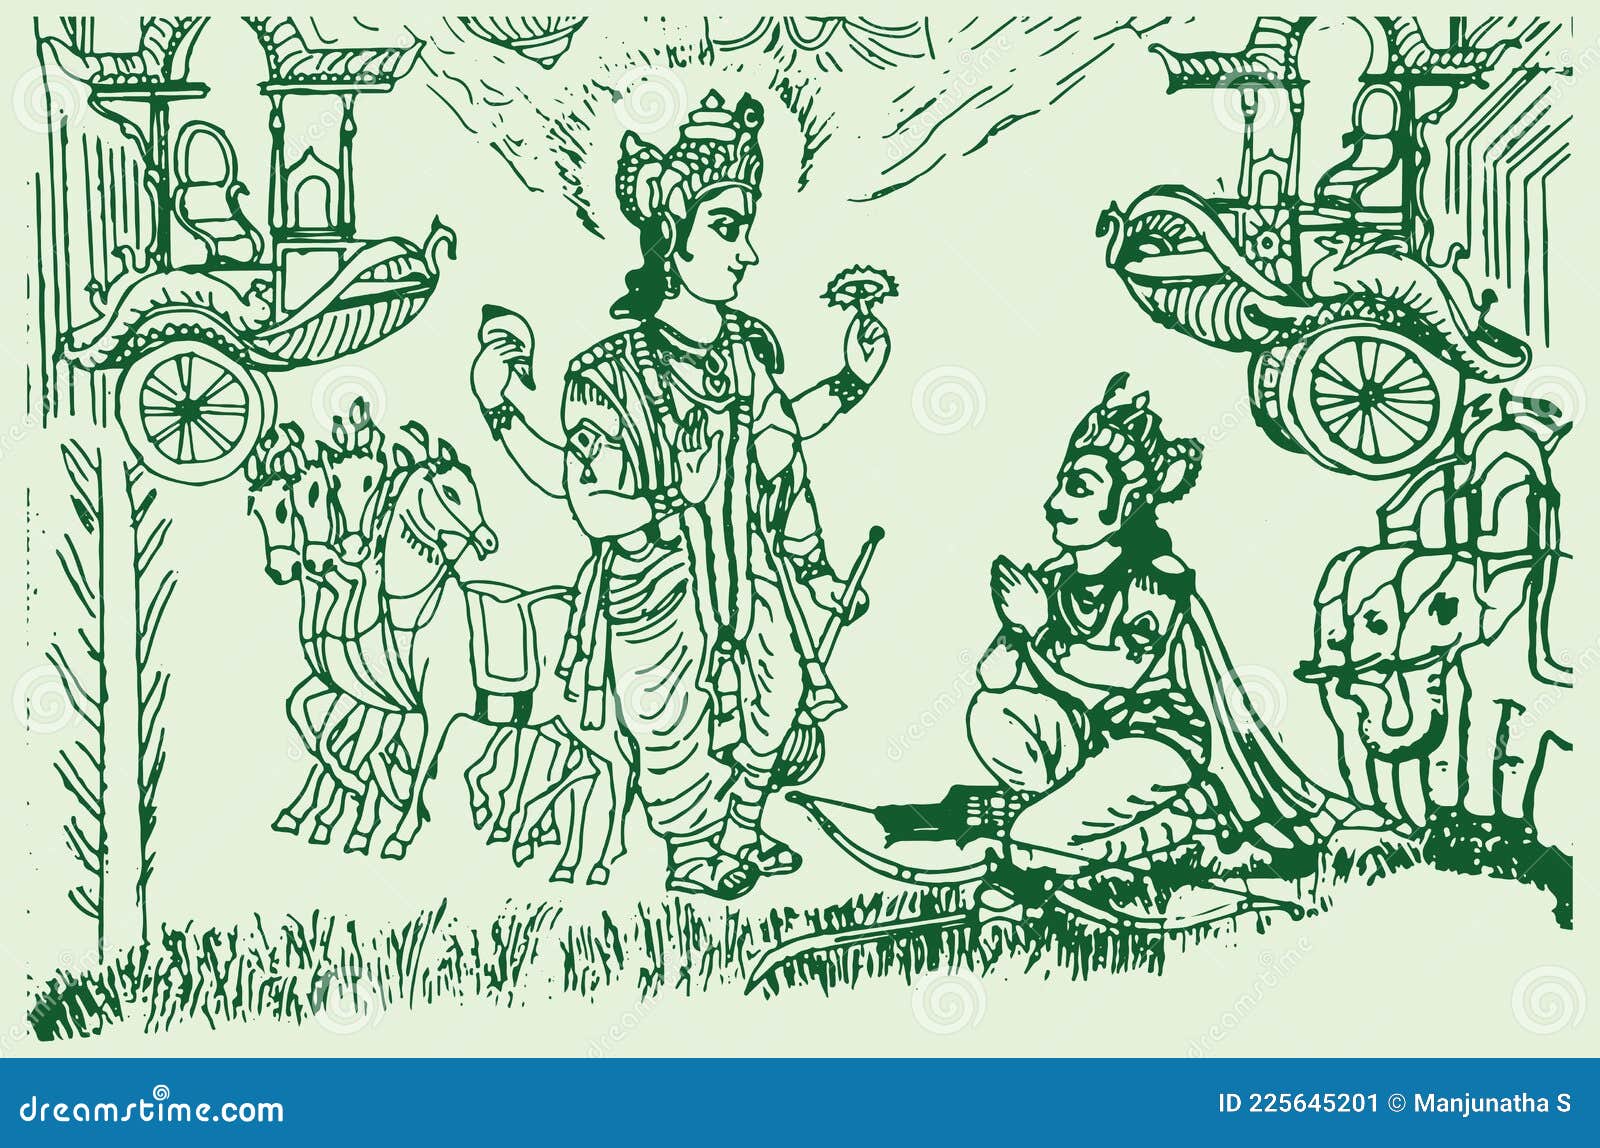 Arjuna (a doodle) by vdtitian on DeviantArt